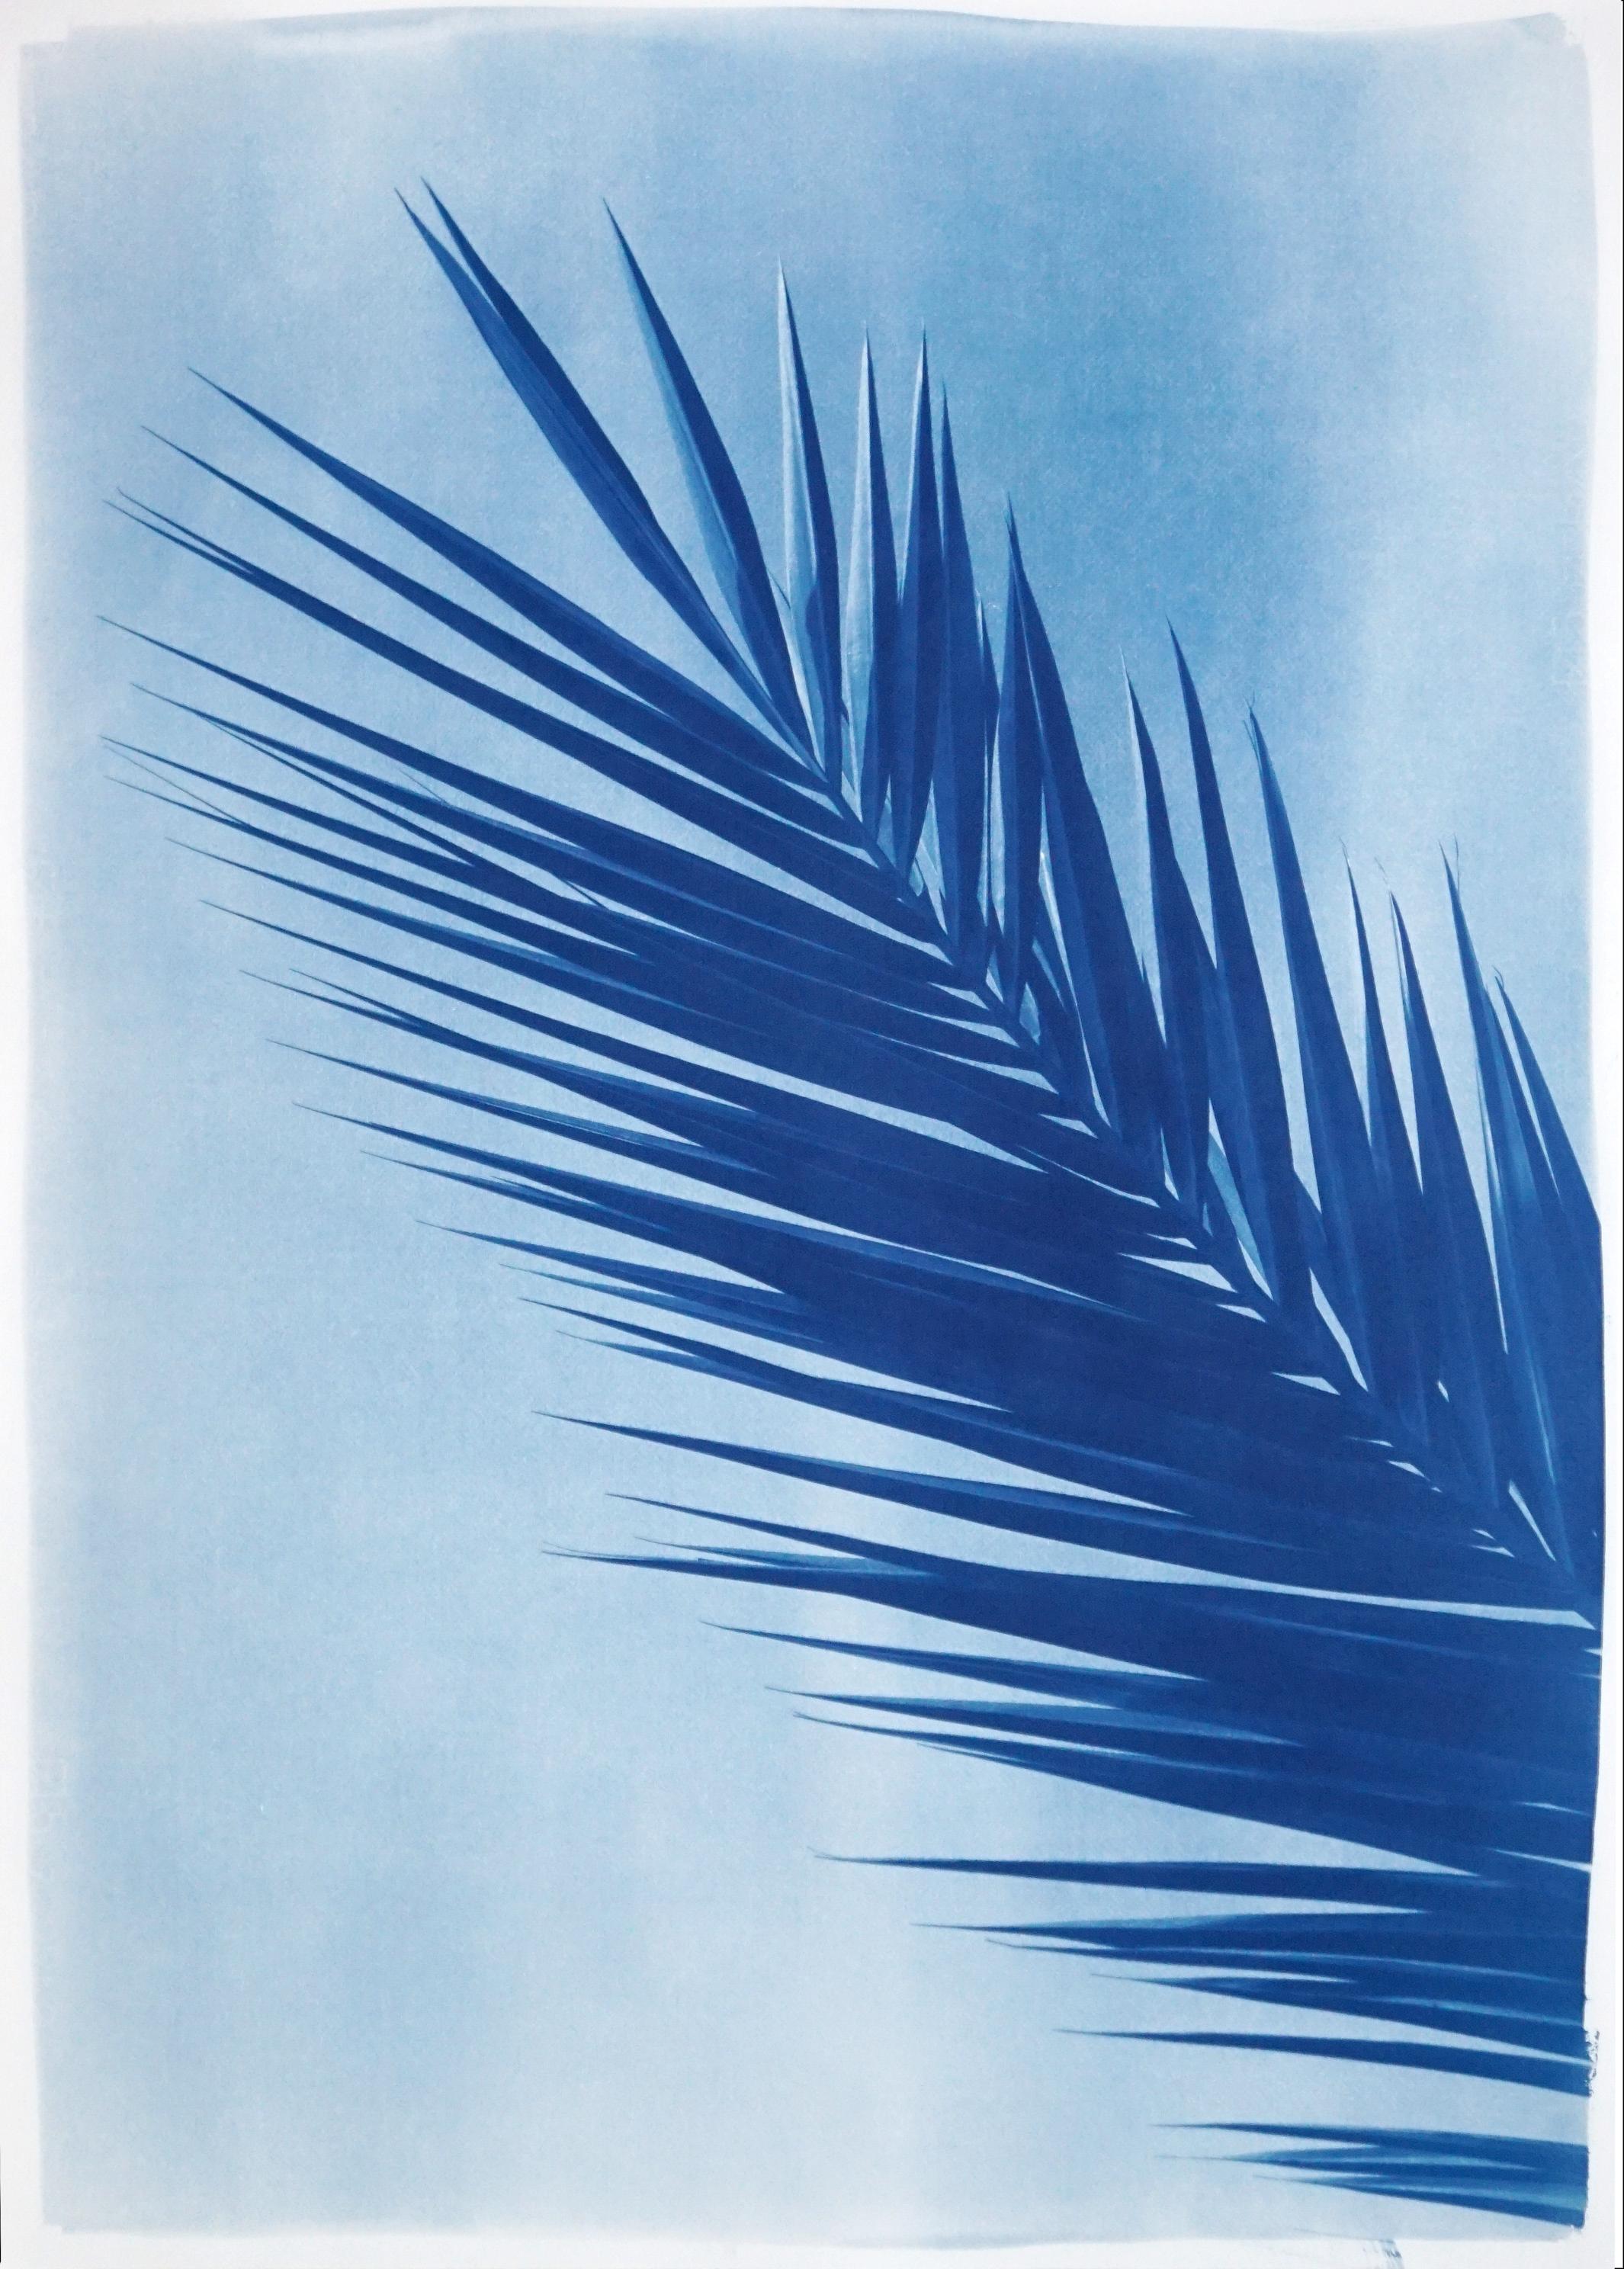 Landscape Art Kind of Cyan - Feuille de palmier au-dessus d'un ciel bleu, cyanotype botanique sur papier fait à la main, vintage tropical